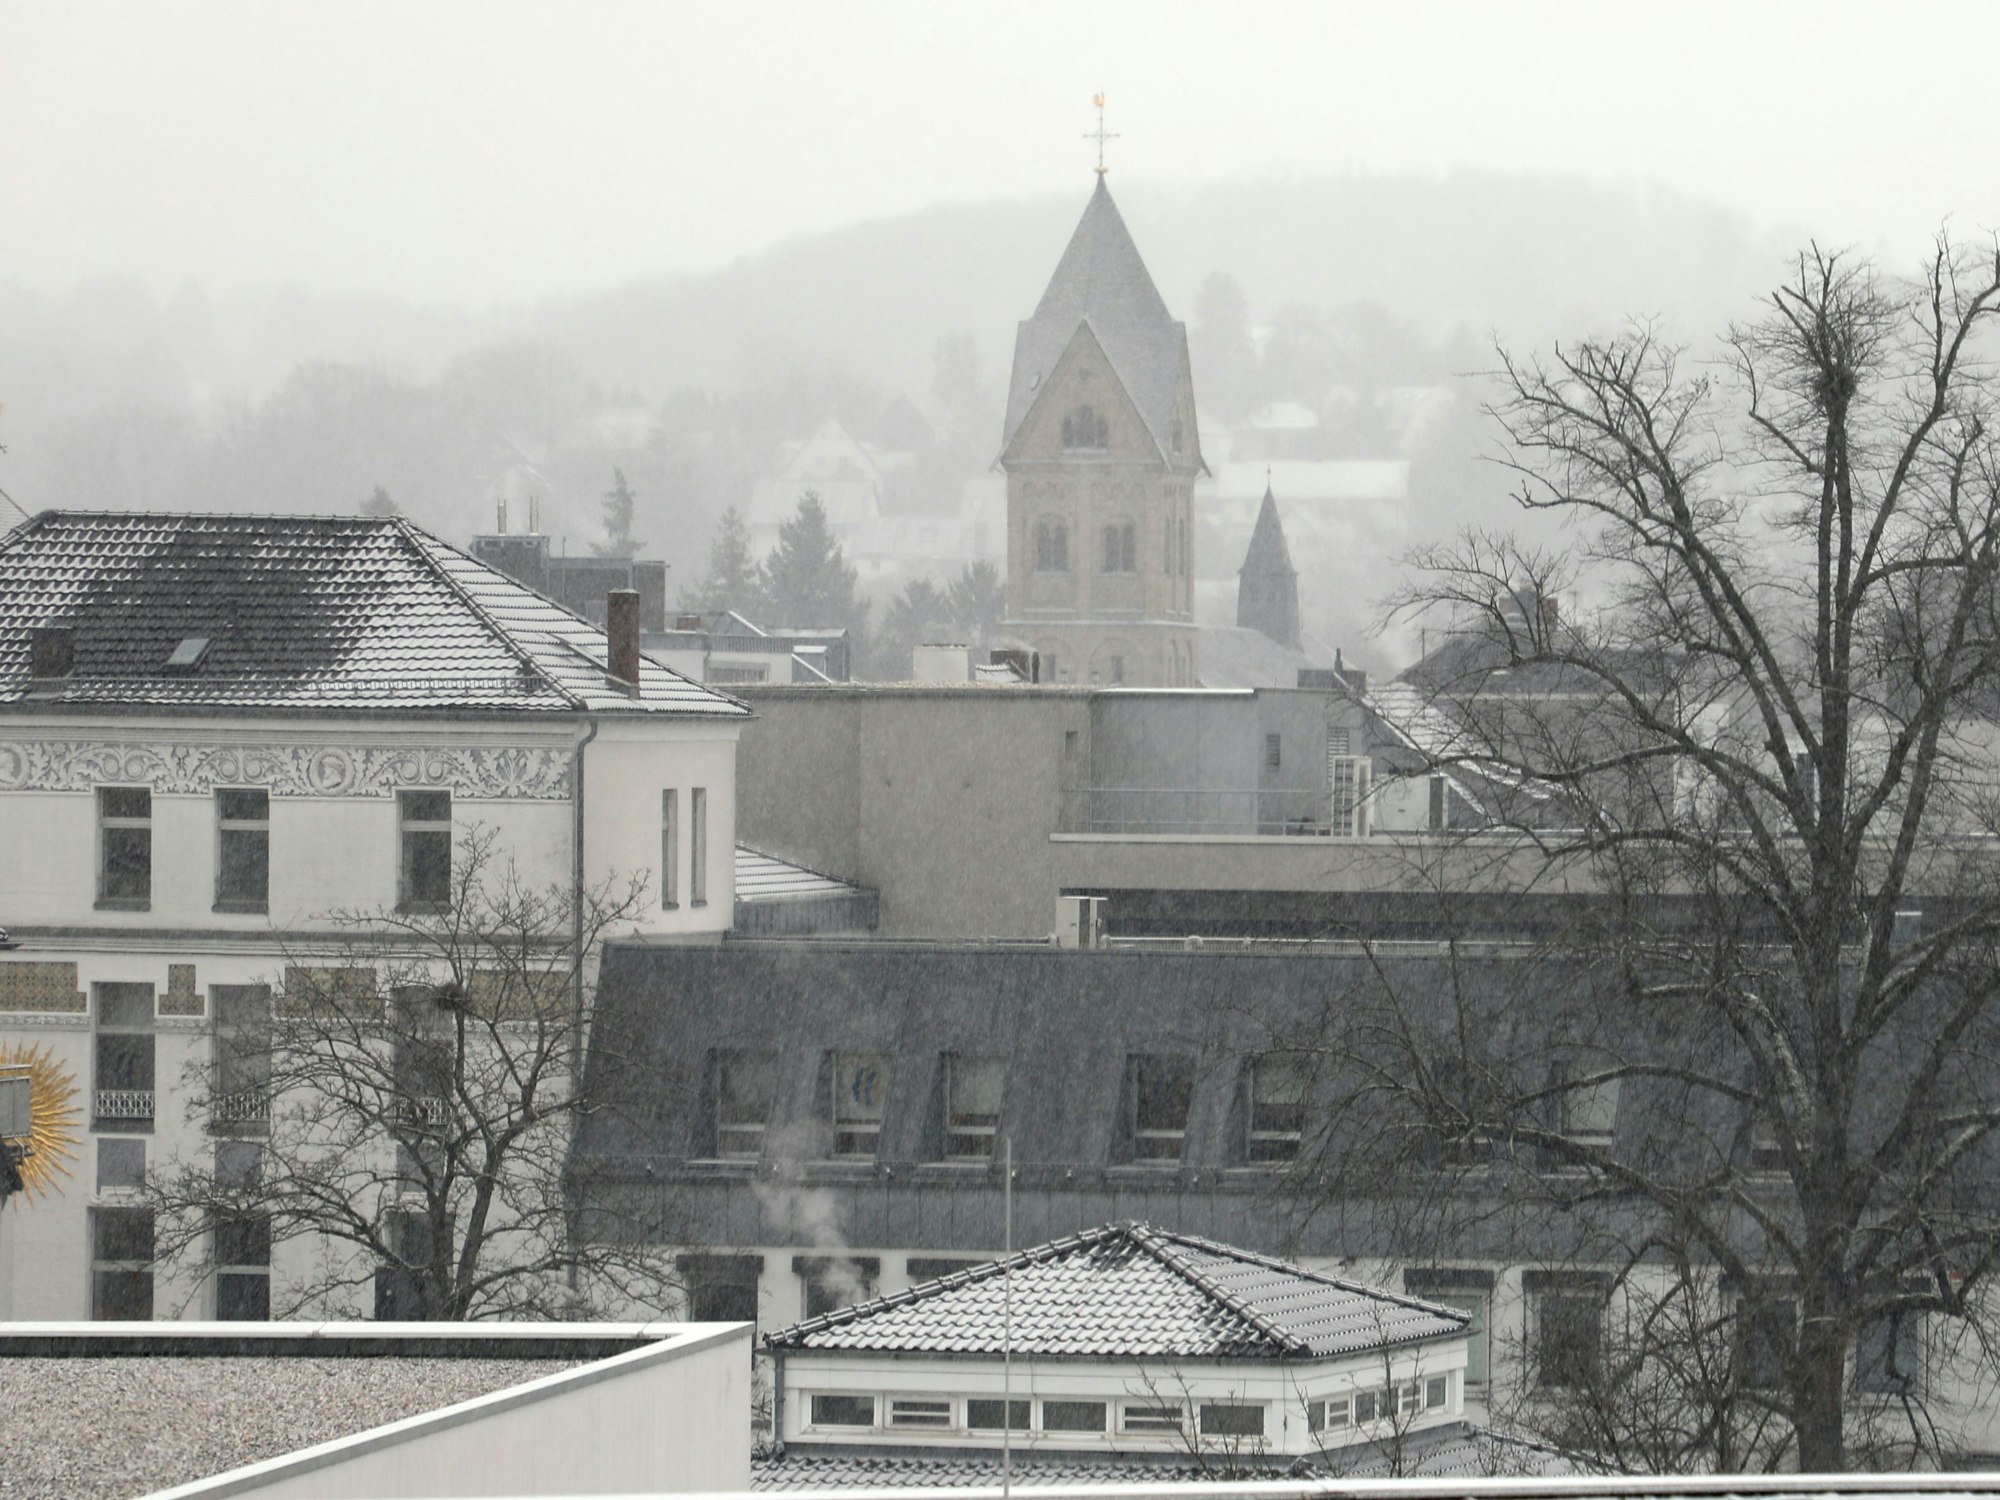 Bergisch Gladbach: Immerhin, ein bisschen Weiß ist auf den Dächern bereits zu sehen.